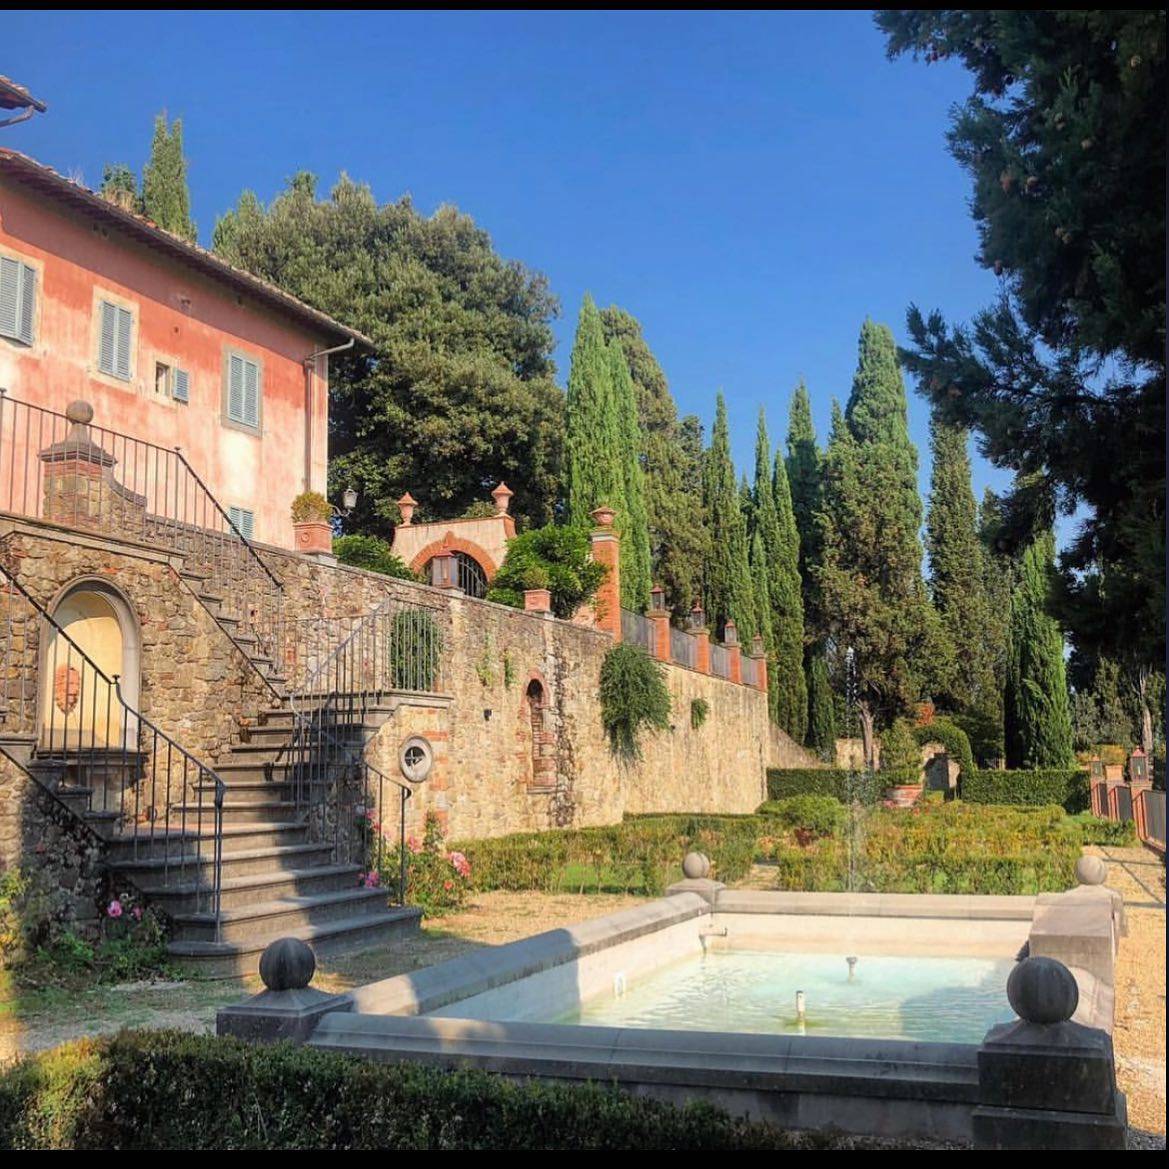 Prenditi una pausa dalla vita frenetica, e vieni a “respirare la bellezza” a Villa Barberino

.
.
.
.
.
.
.
.